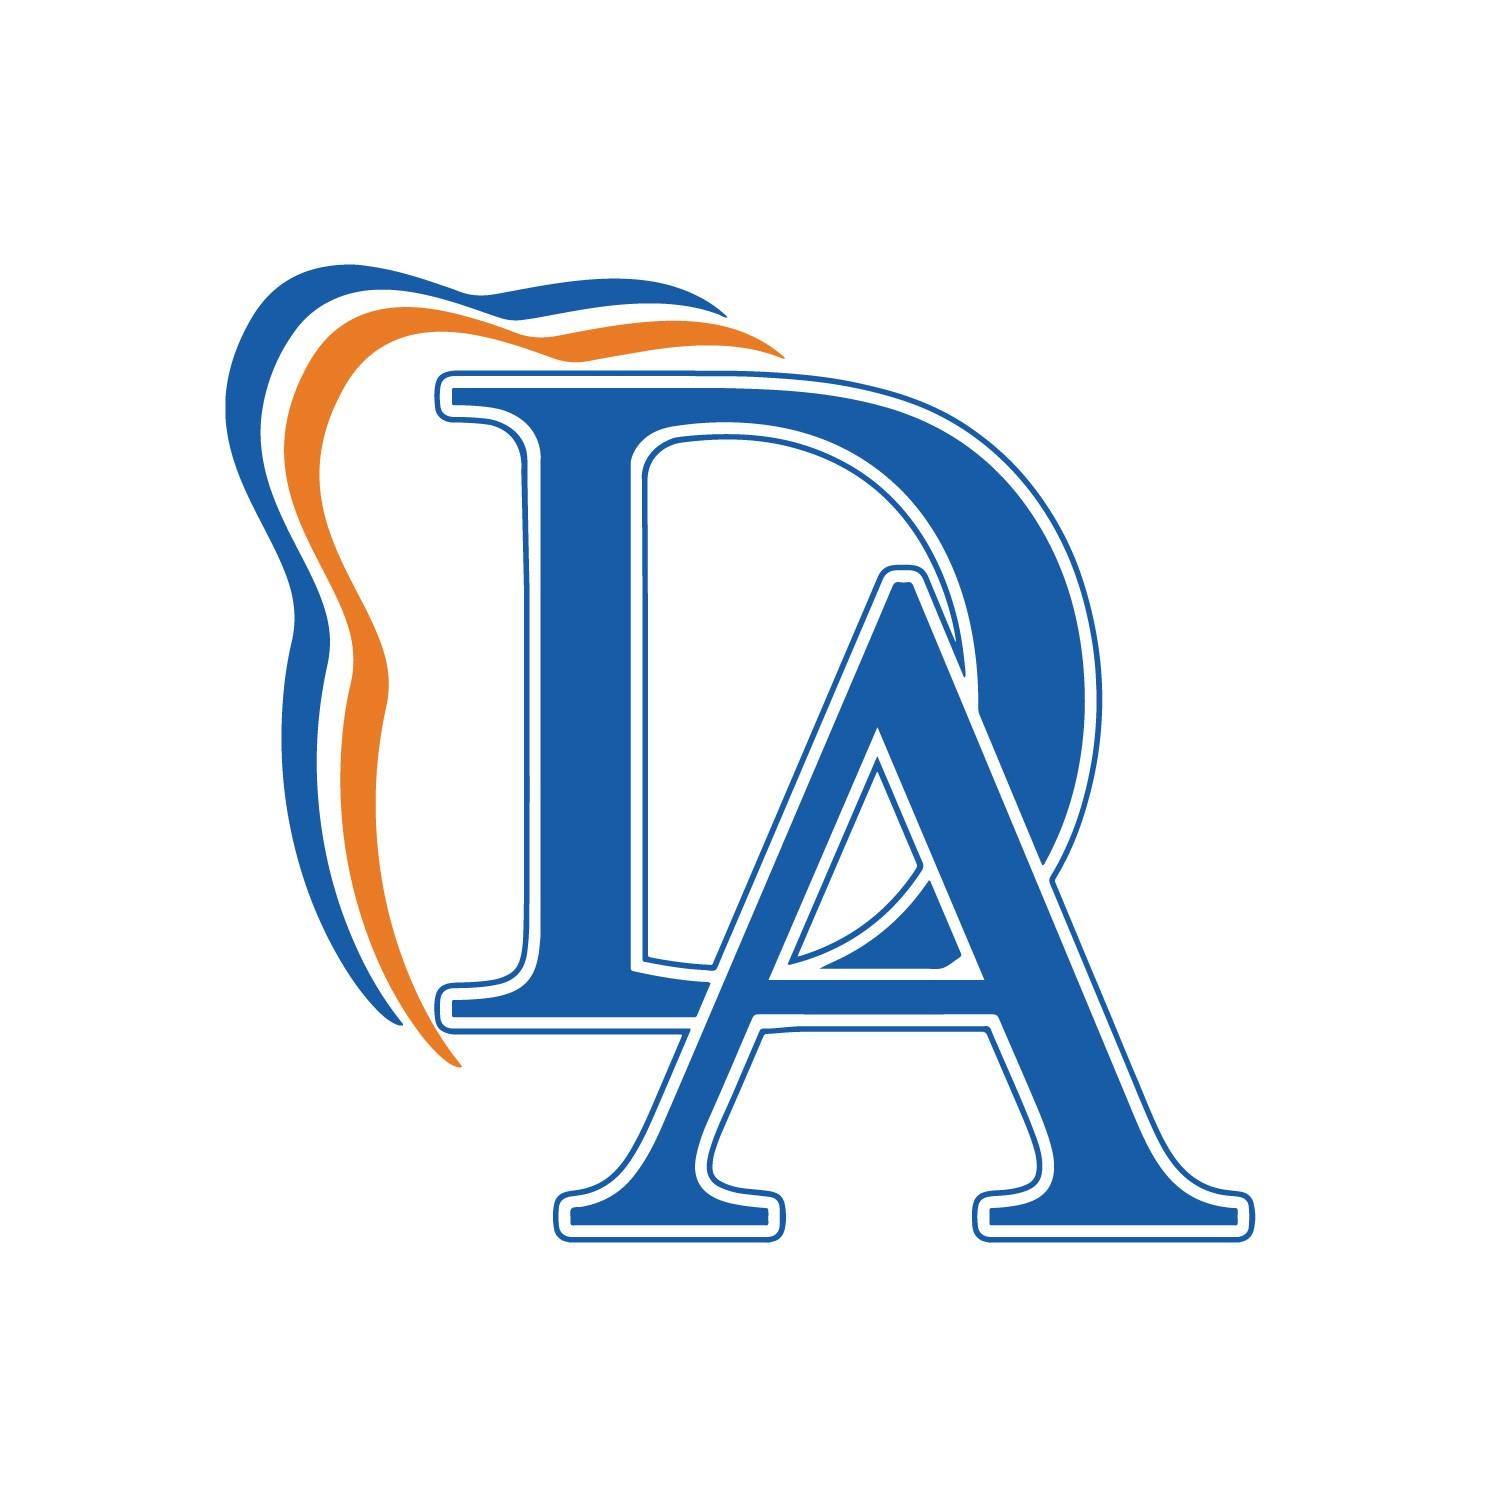 Business logo of Dental Associates of Florida